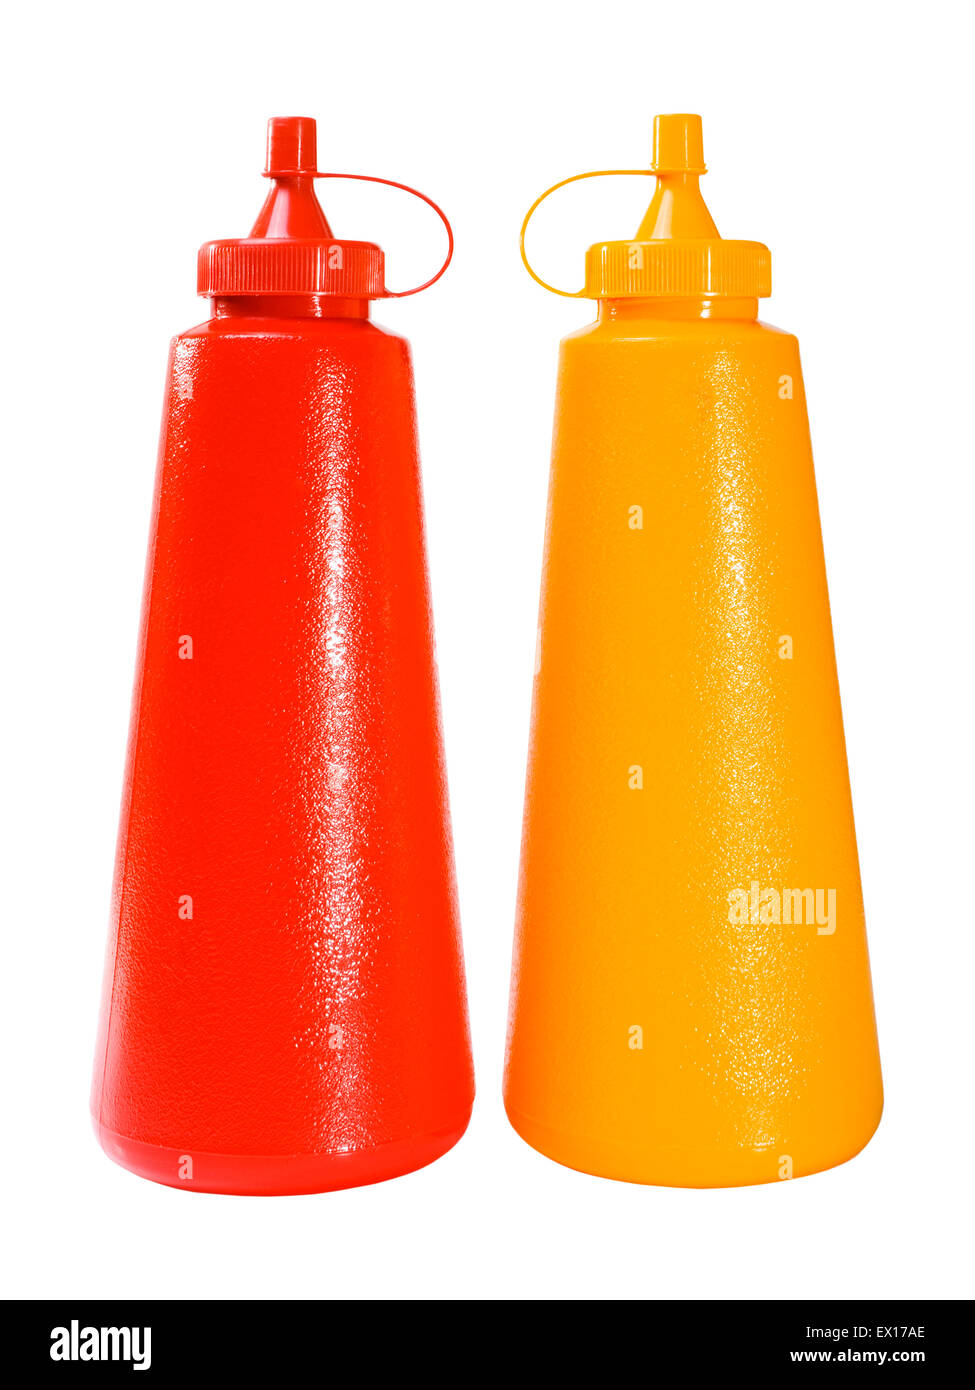 Immagine di stock di ketchup e senape di bottiglie in plastica isolato su bianco Foto Stock